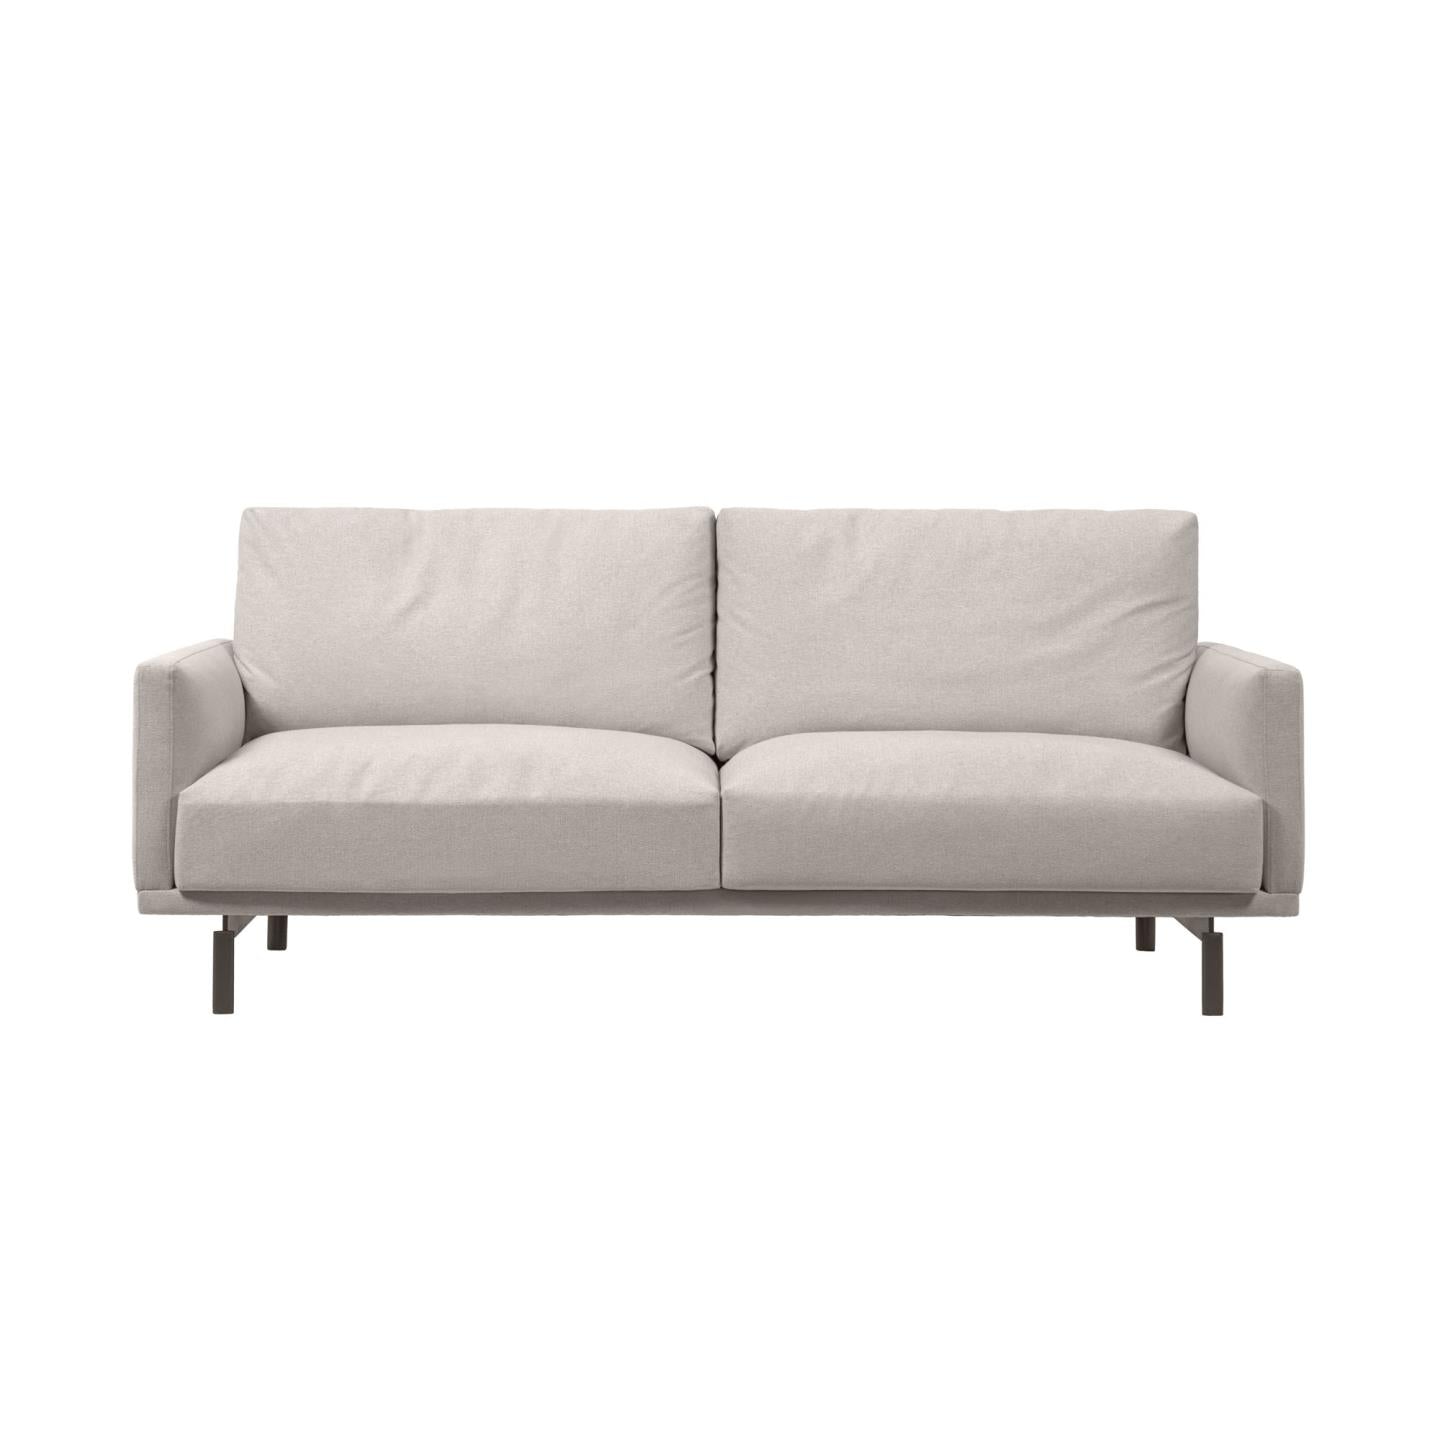 Galene 3 személyes kanapé bézs színben, 214 cm